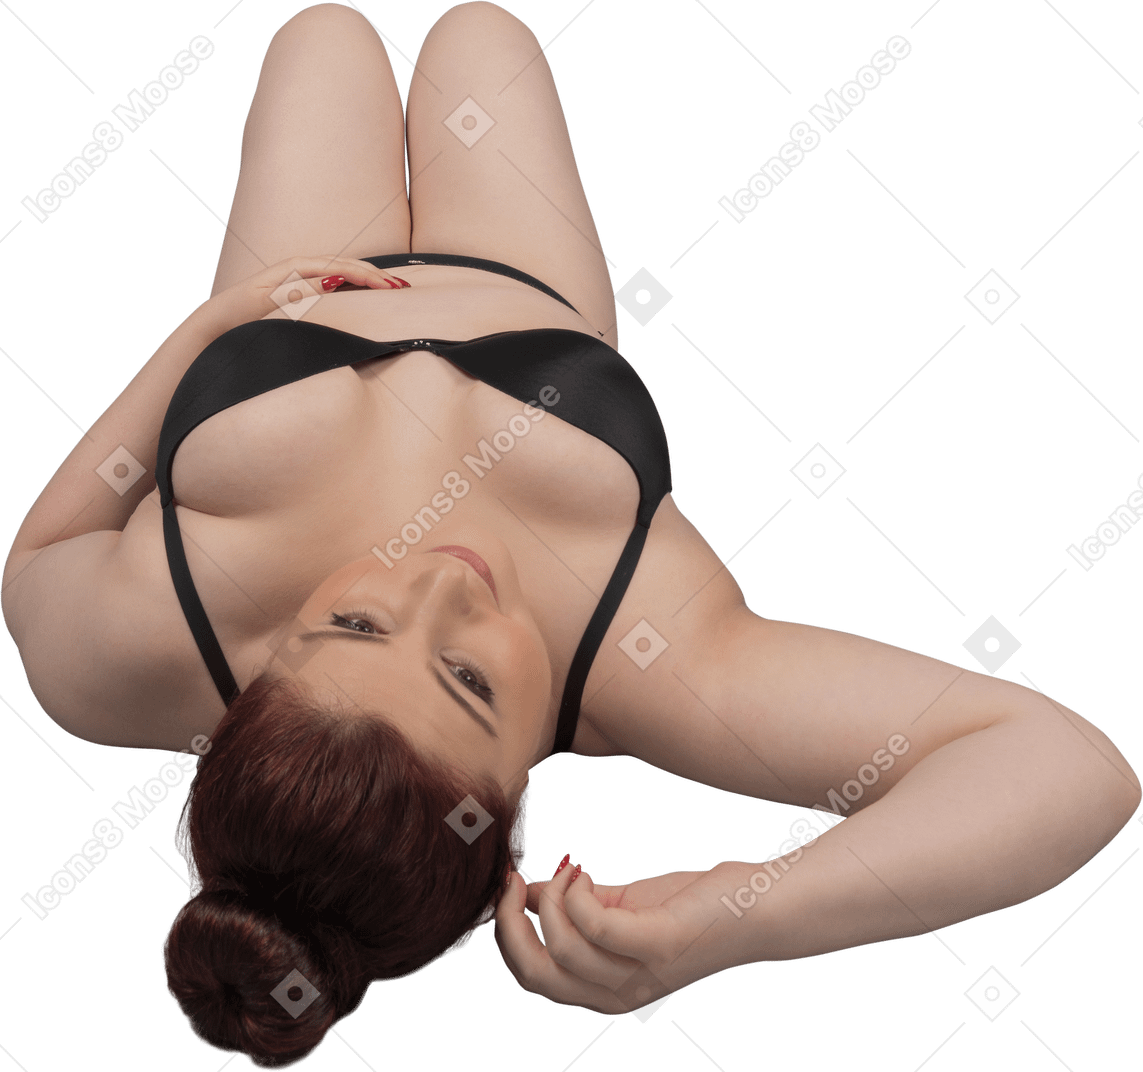 Femme en lingerie noire allongée sur le sol